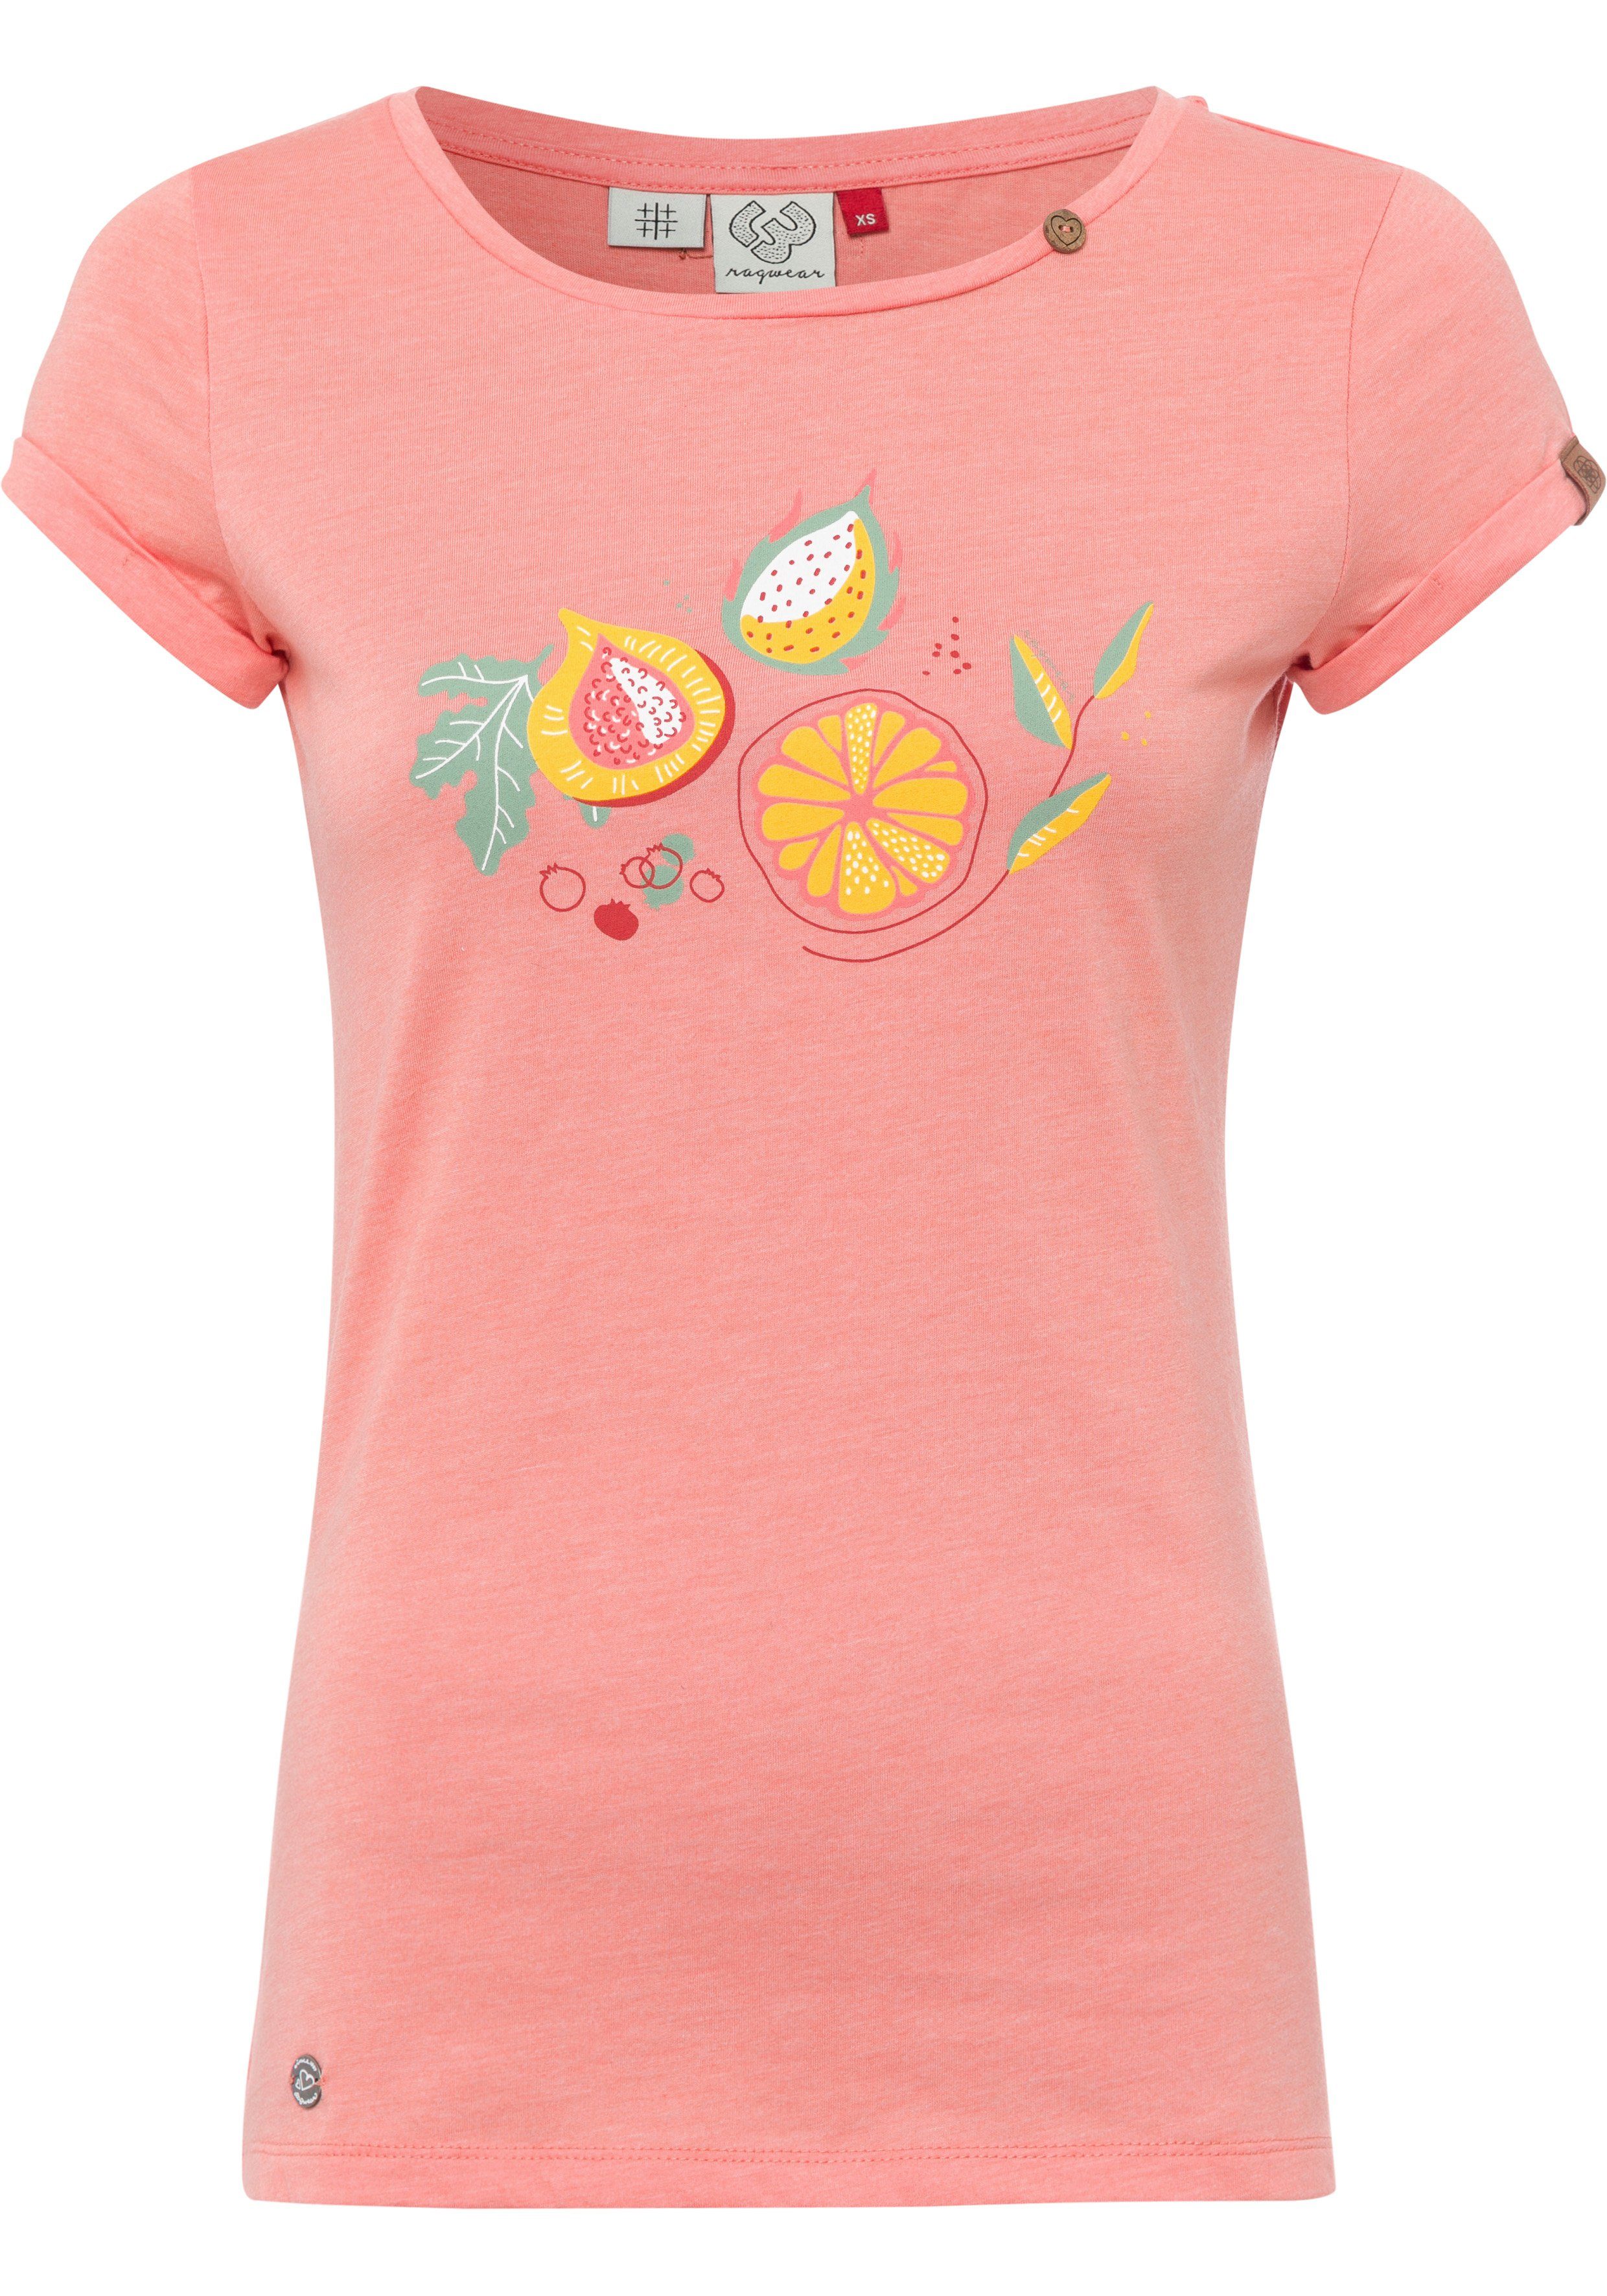 Ragwear T-Shirt MINT PRINT mit Front-Print 4005 coral